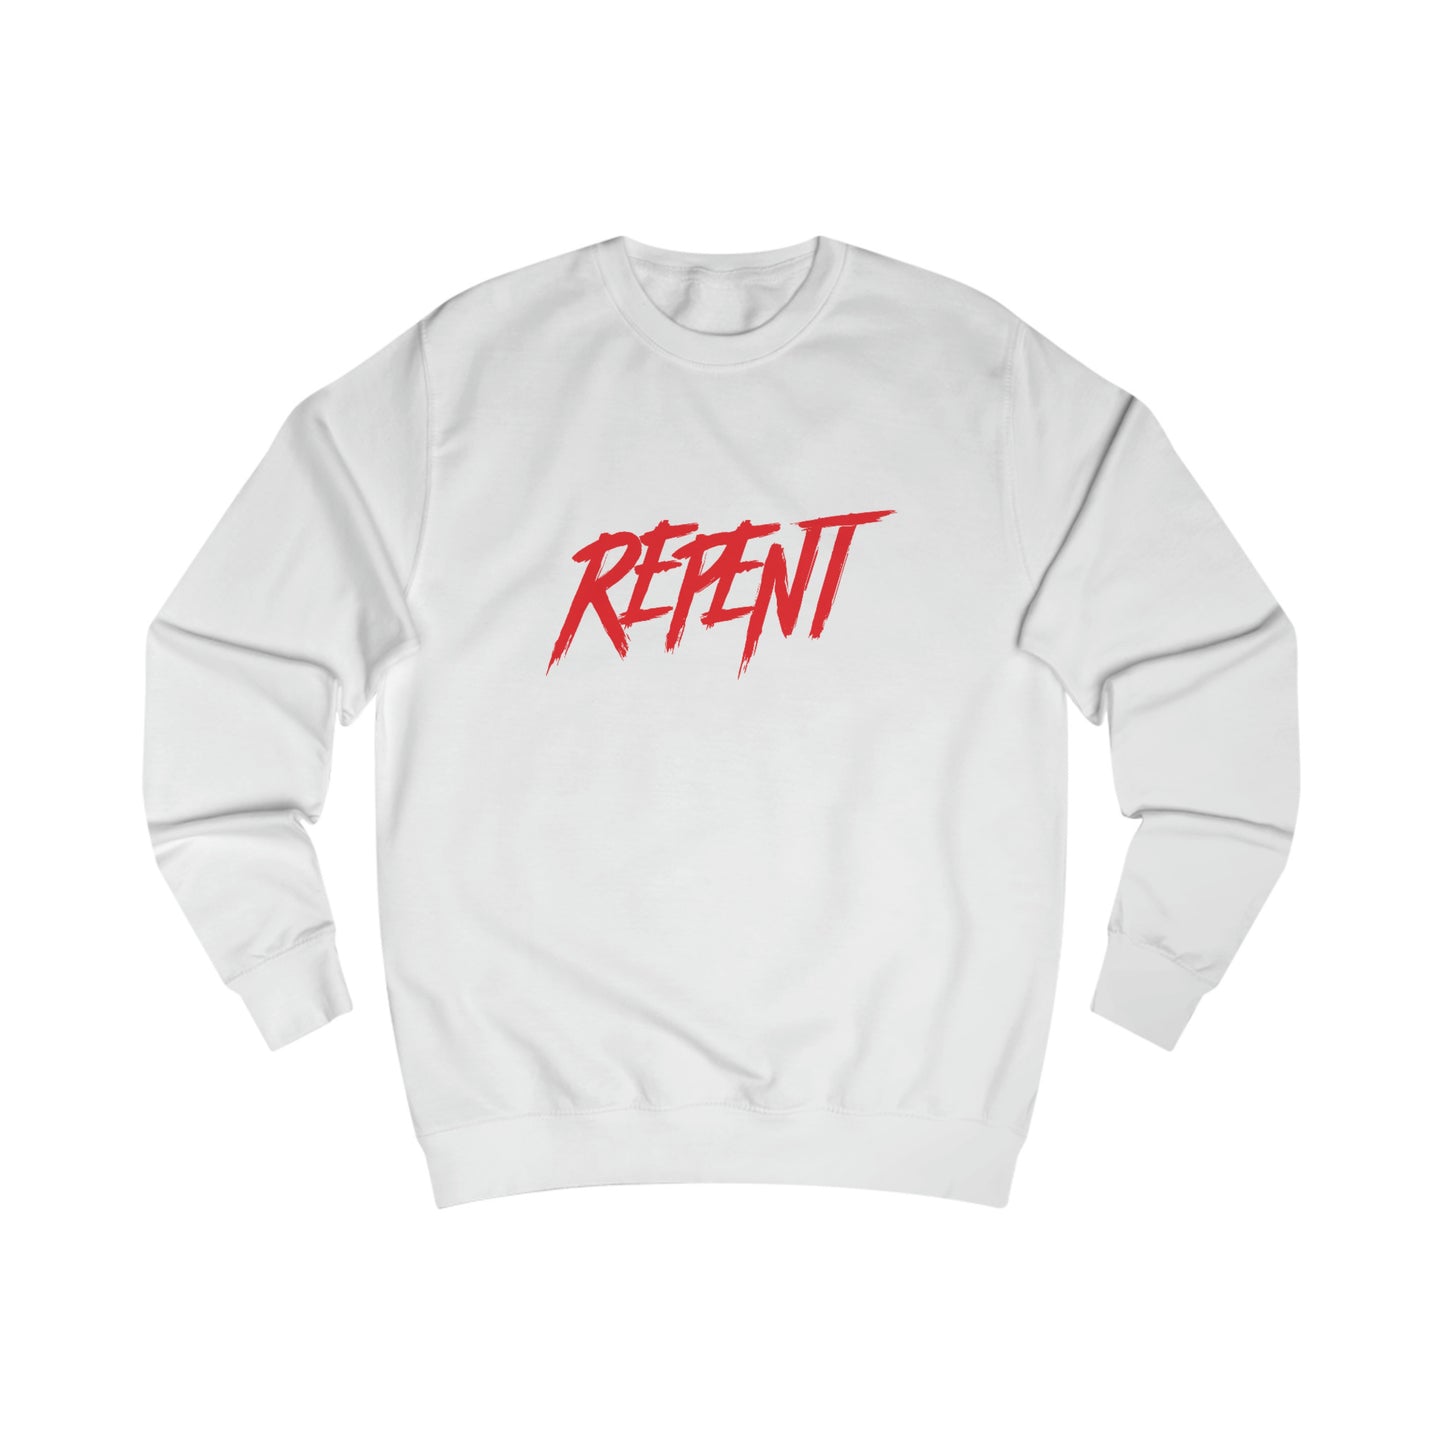 REPENT Unisex Premium Sweatshirt